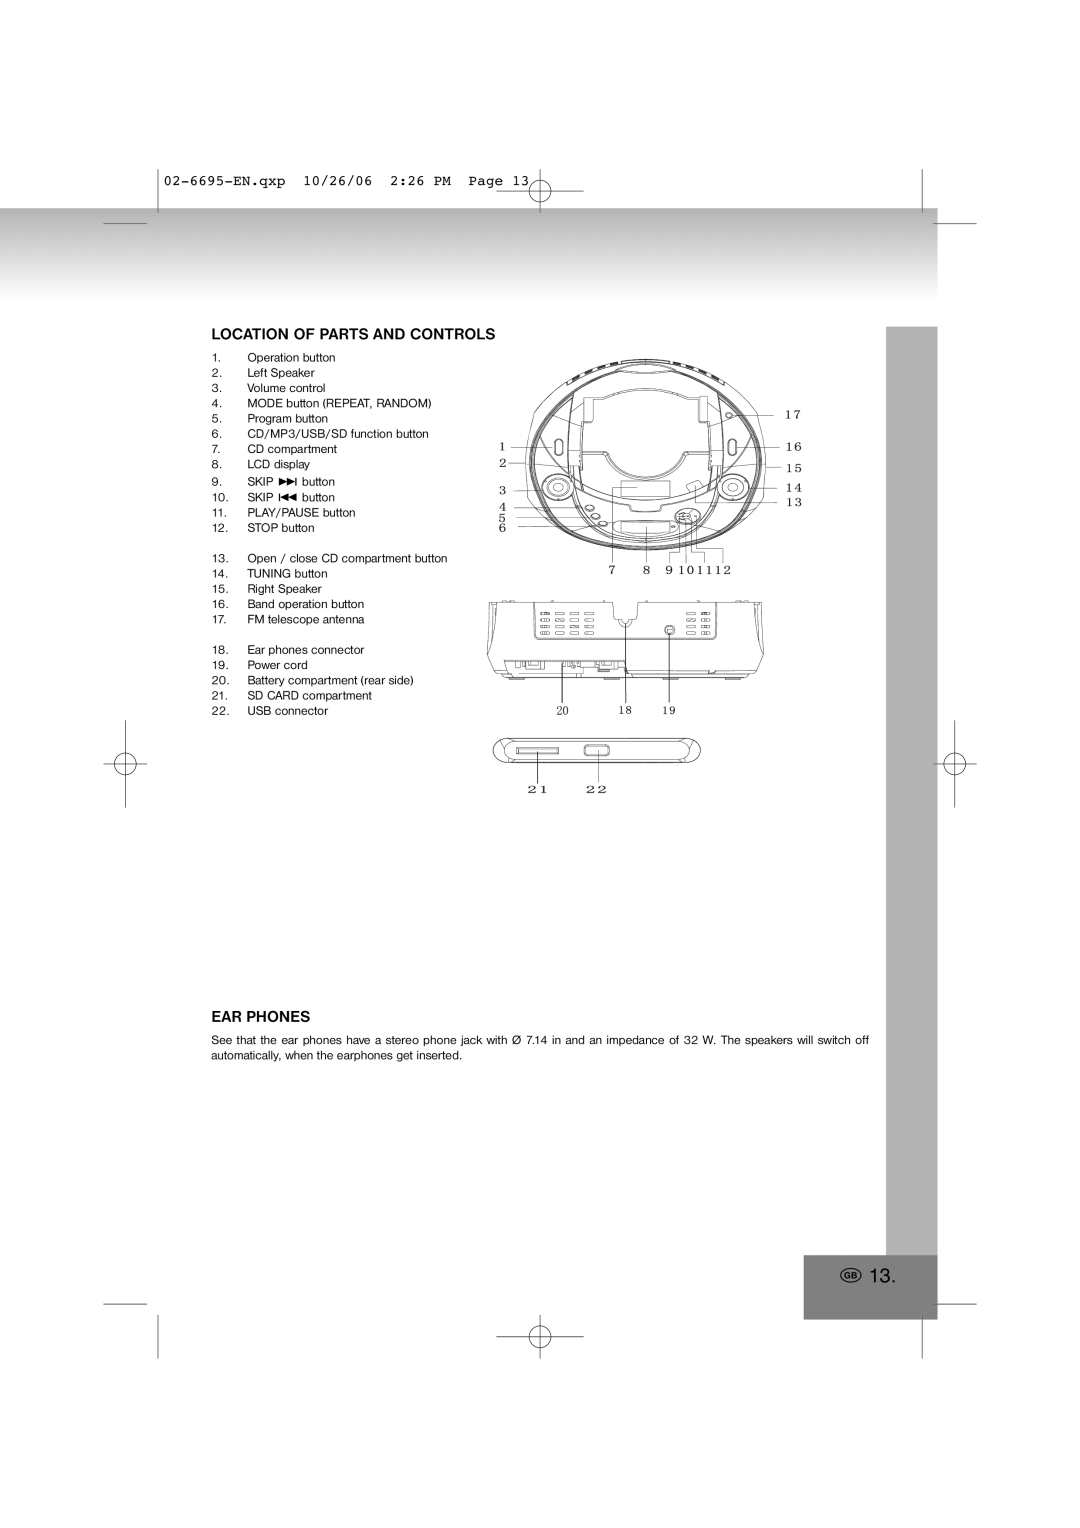 Elta manual Location Of Parts And Controls, Ear Phones, 02-6695-EN.qxp10/26/06 2 26 PM Page 